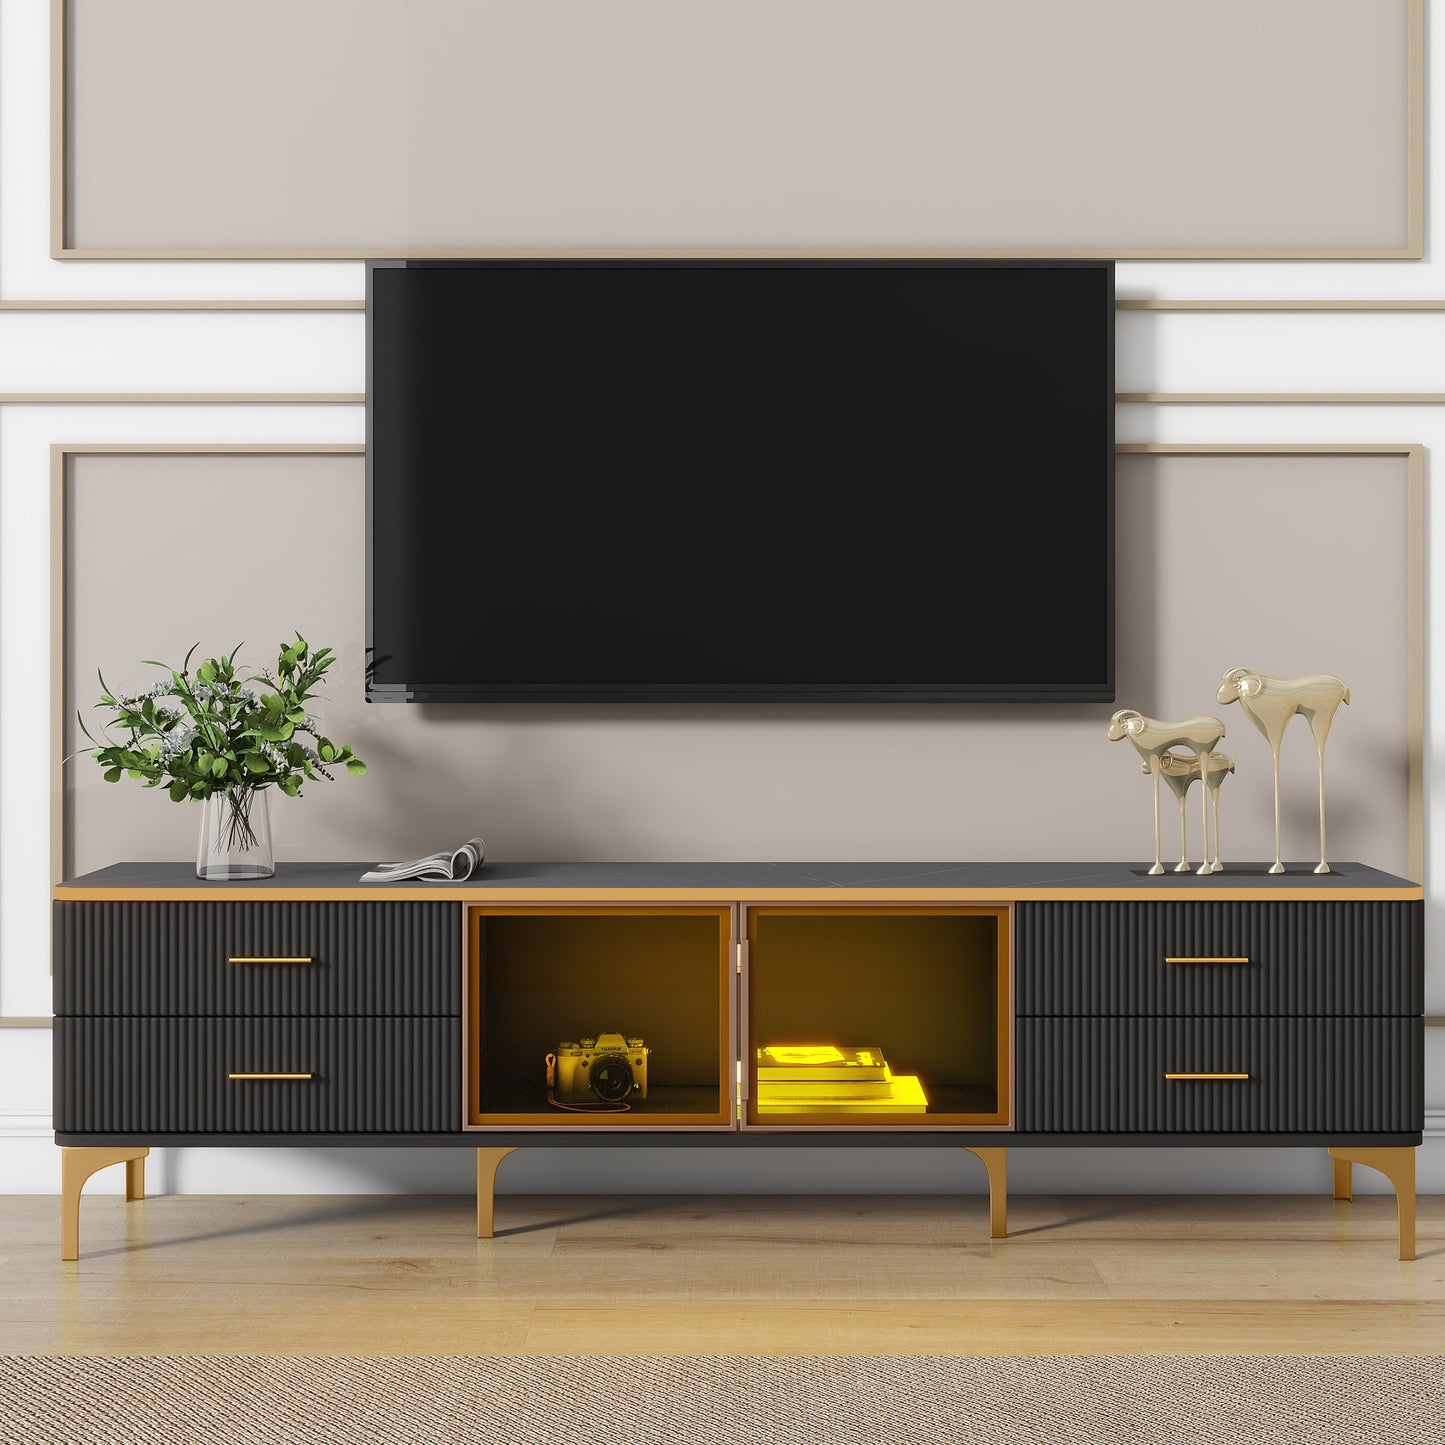 ON-TREND Meuble TV LED élégant avec plateau en marbre veiné pour téléviseurs jusqu'à 78", centre de divertissement avec armoire de rangement en verre marron, pieds et poignées dorés pour le salon, noir